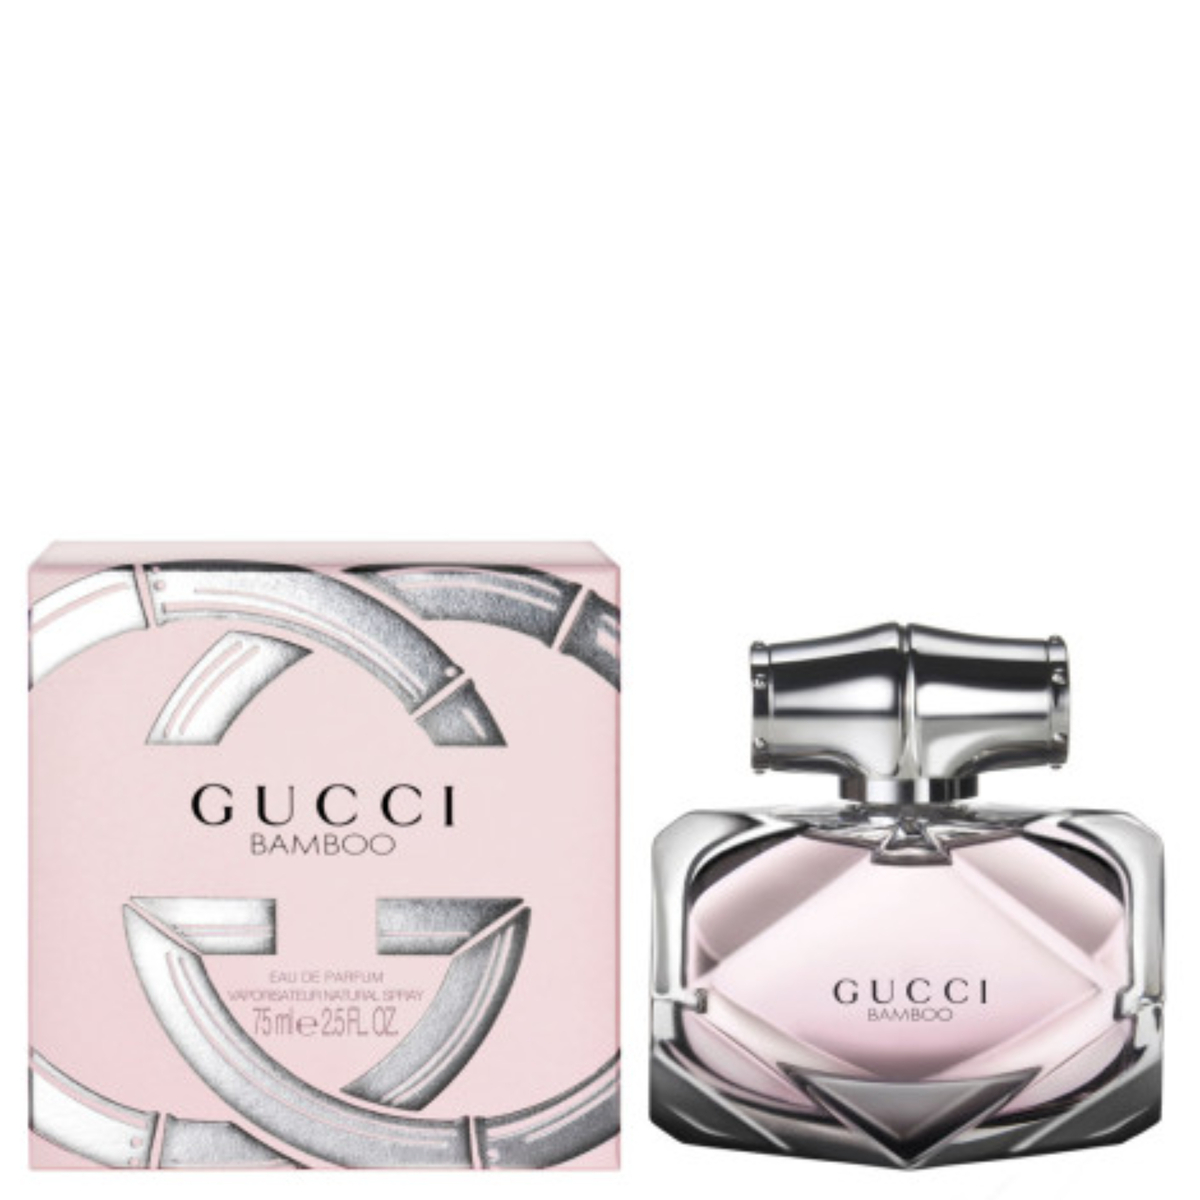 Gucci Bamboo For Women Eau Du Parfum EDP Spray 75ml